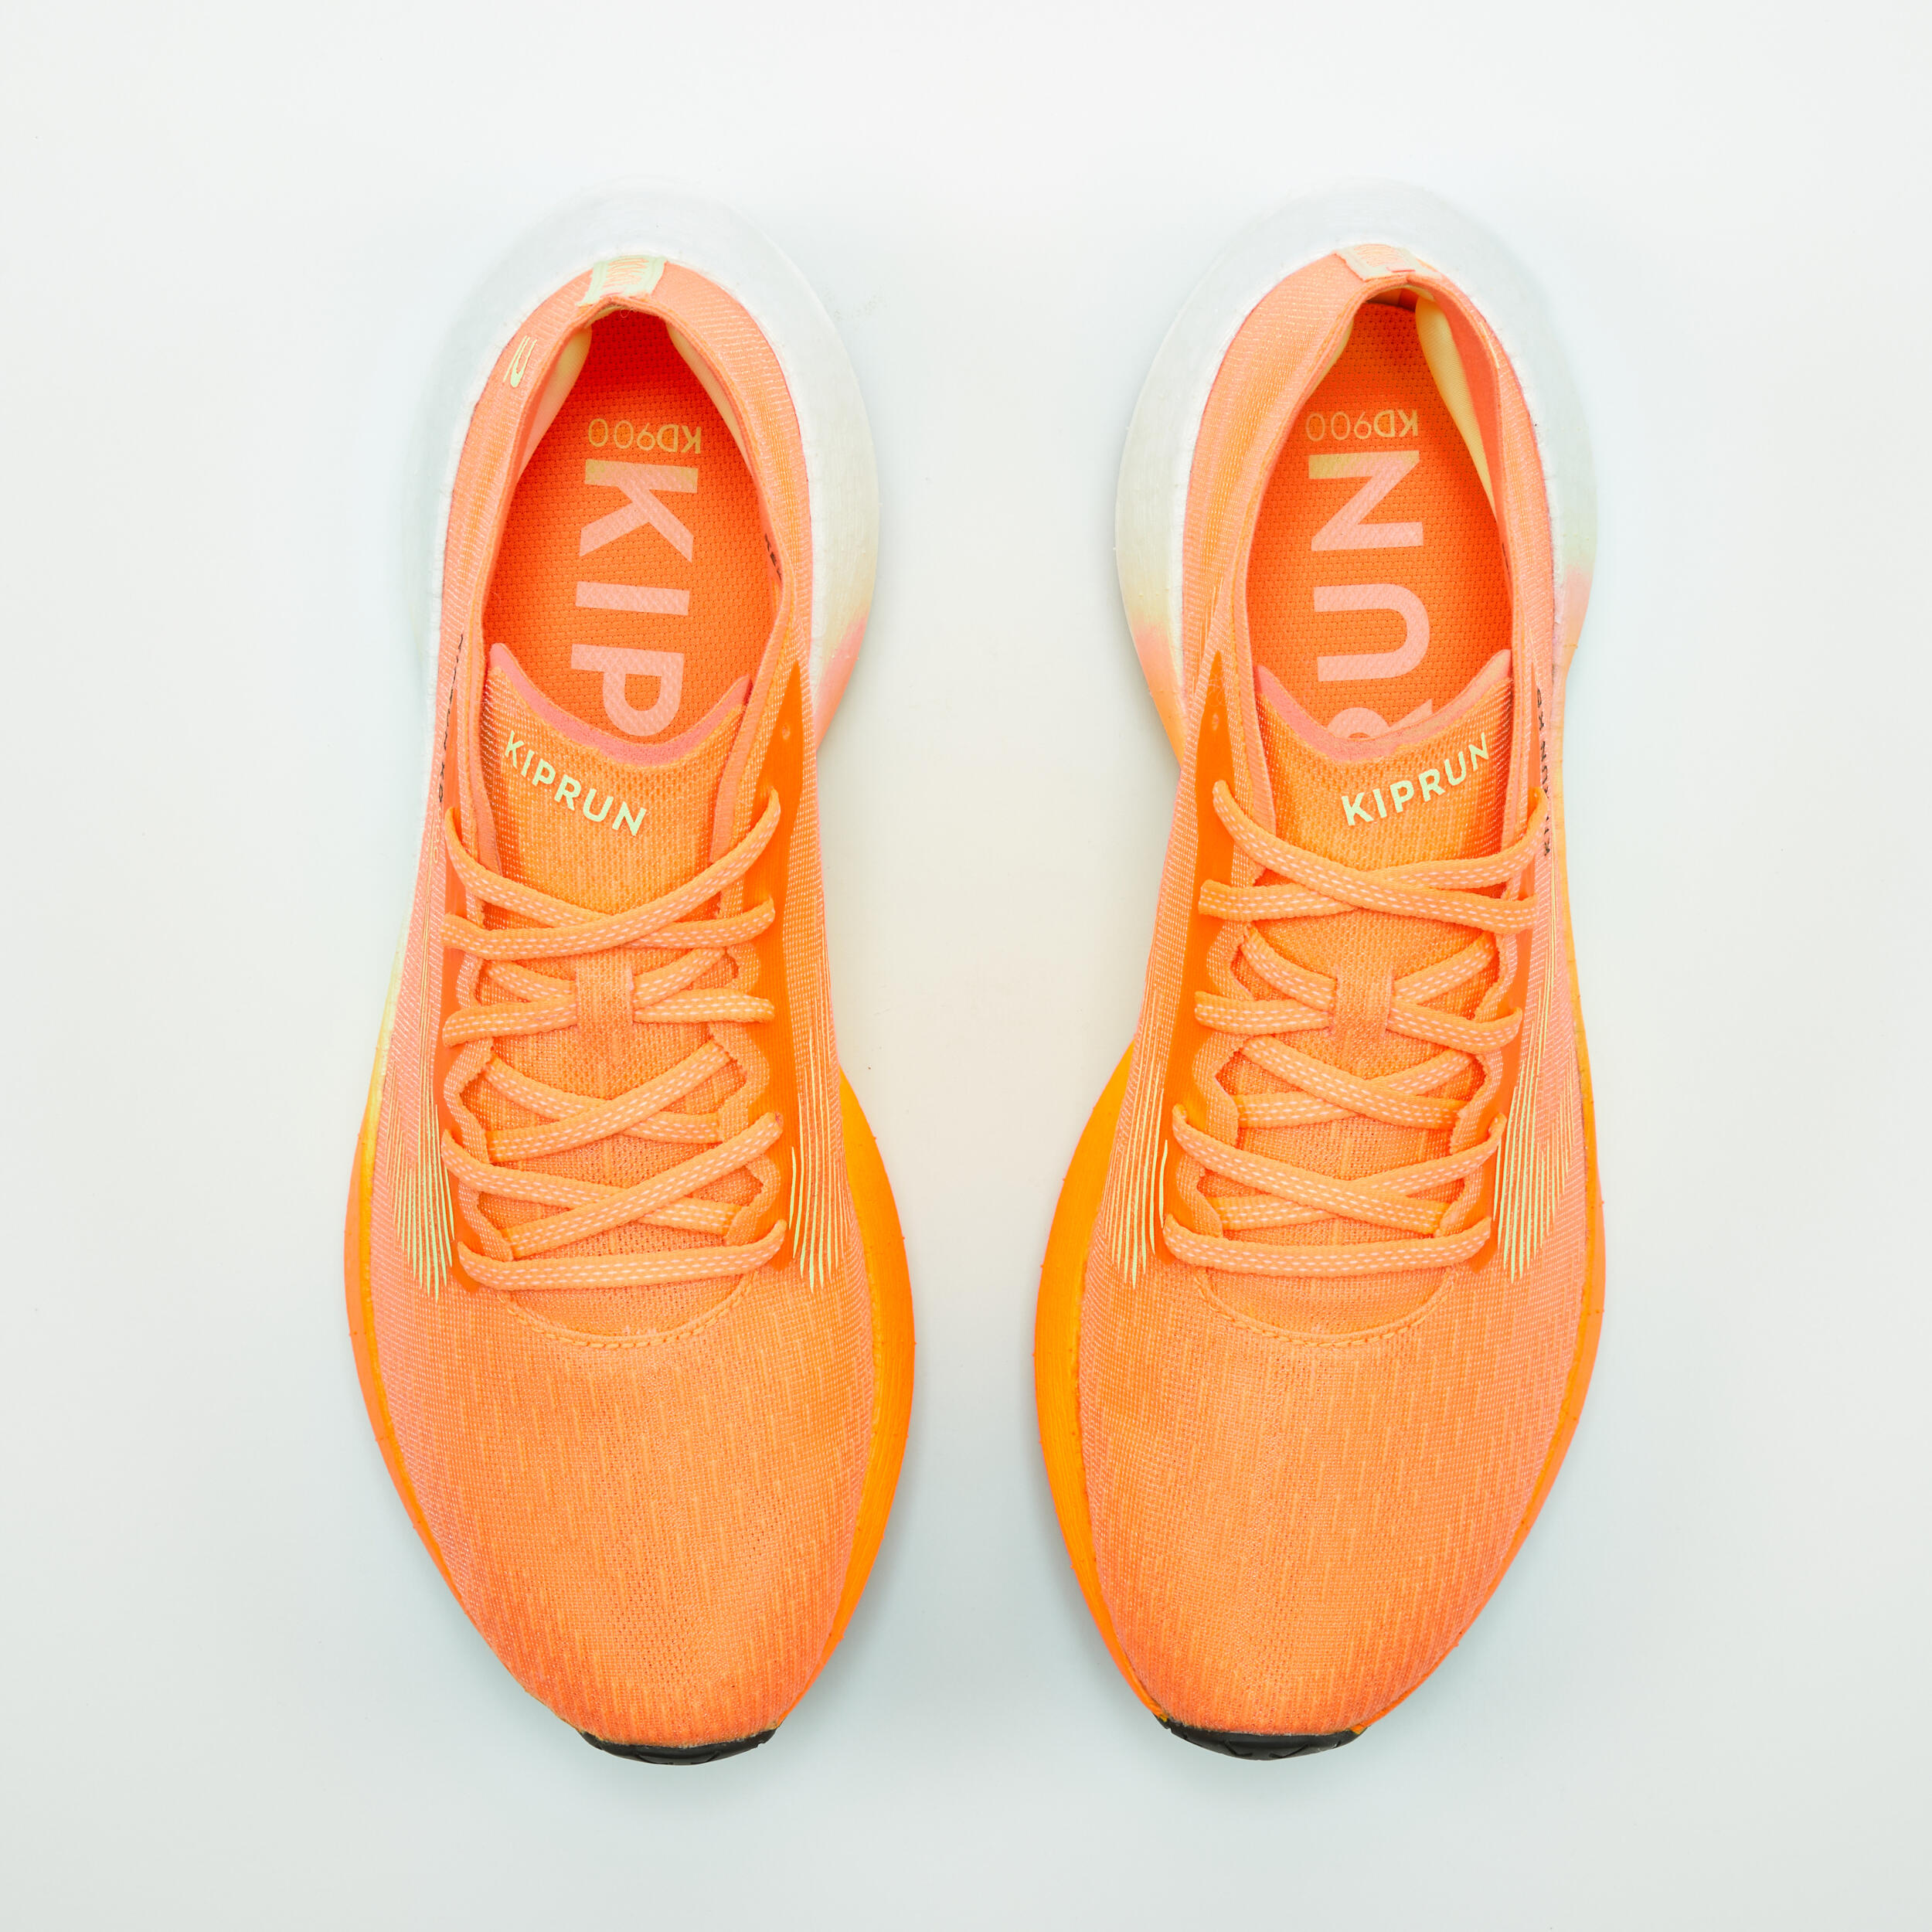 KIPRUN KD900 Men's running shoes - Orange 7/9